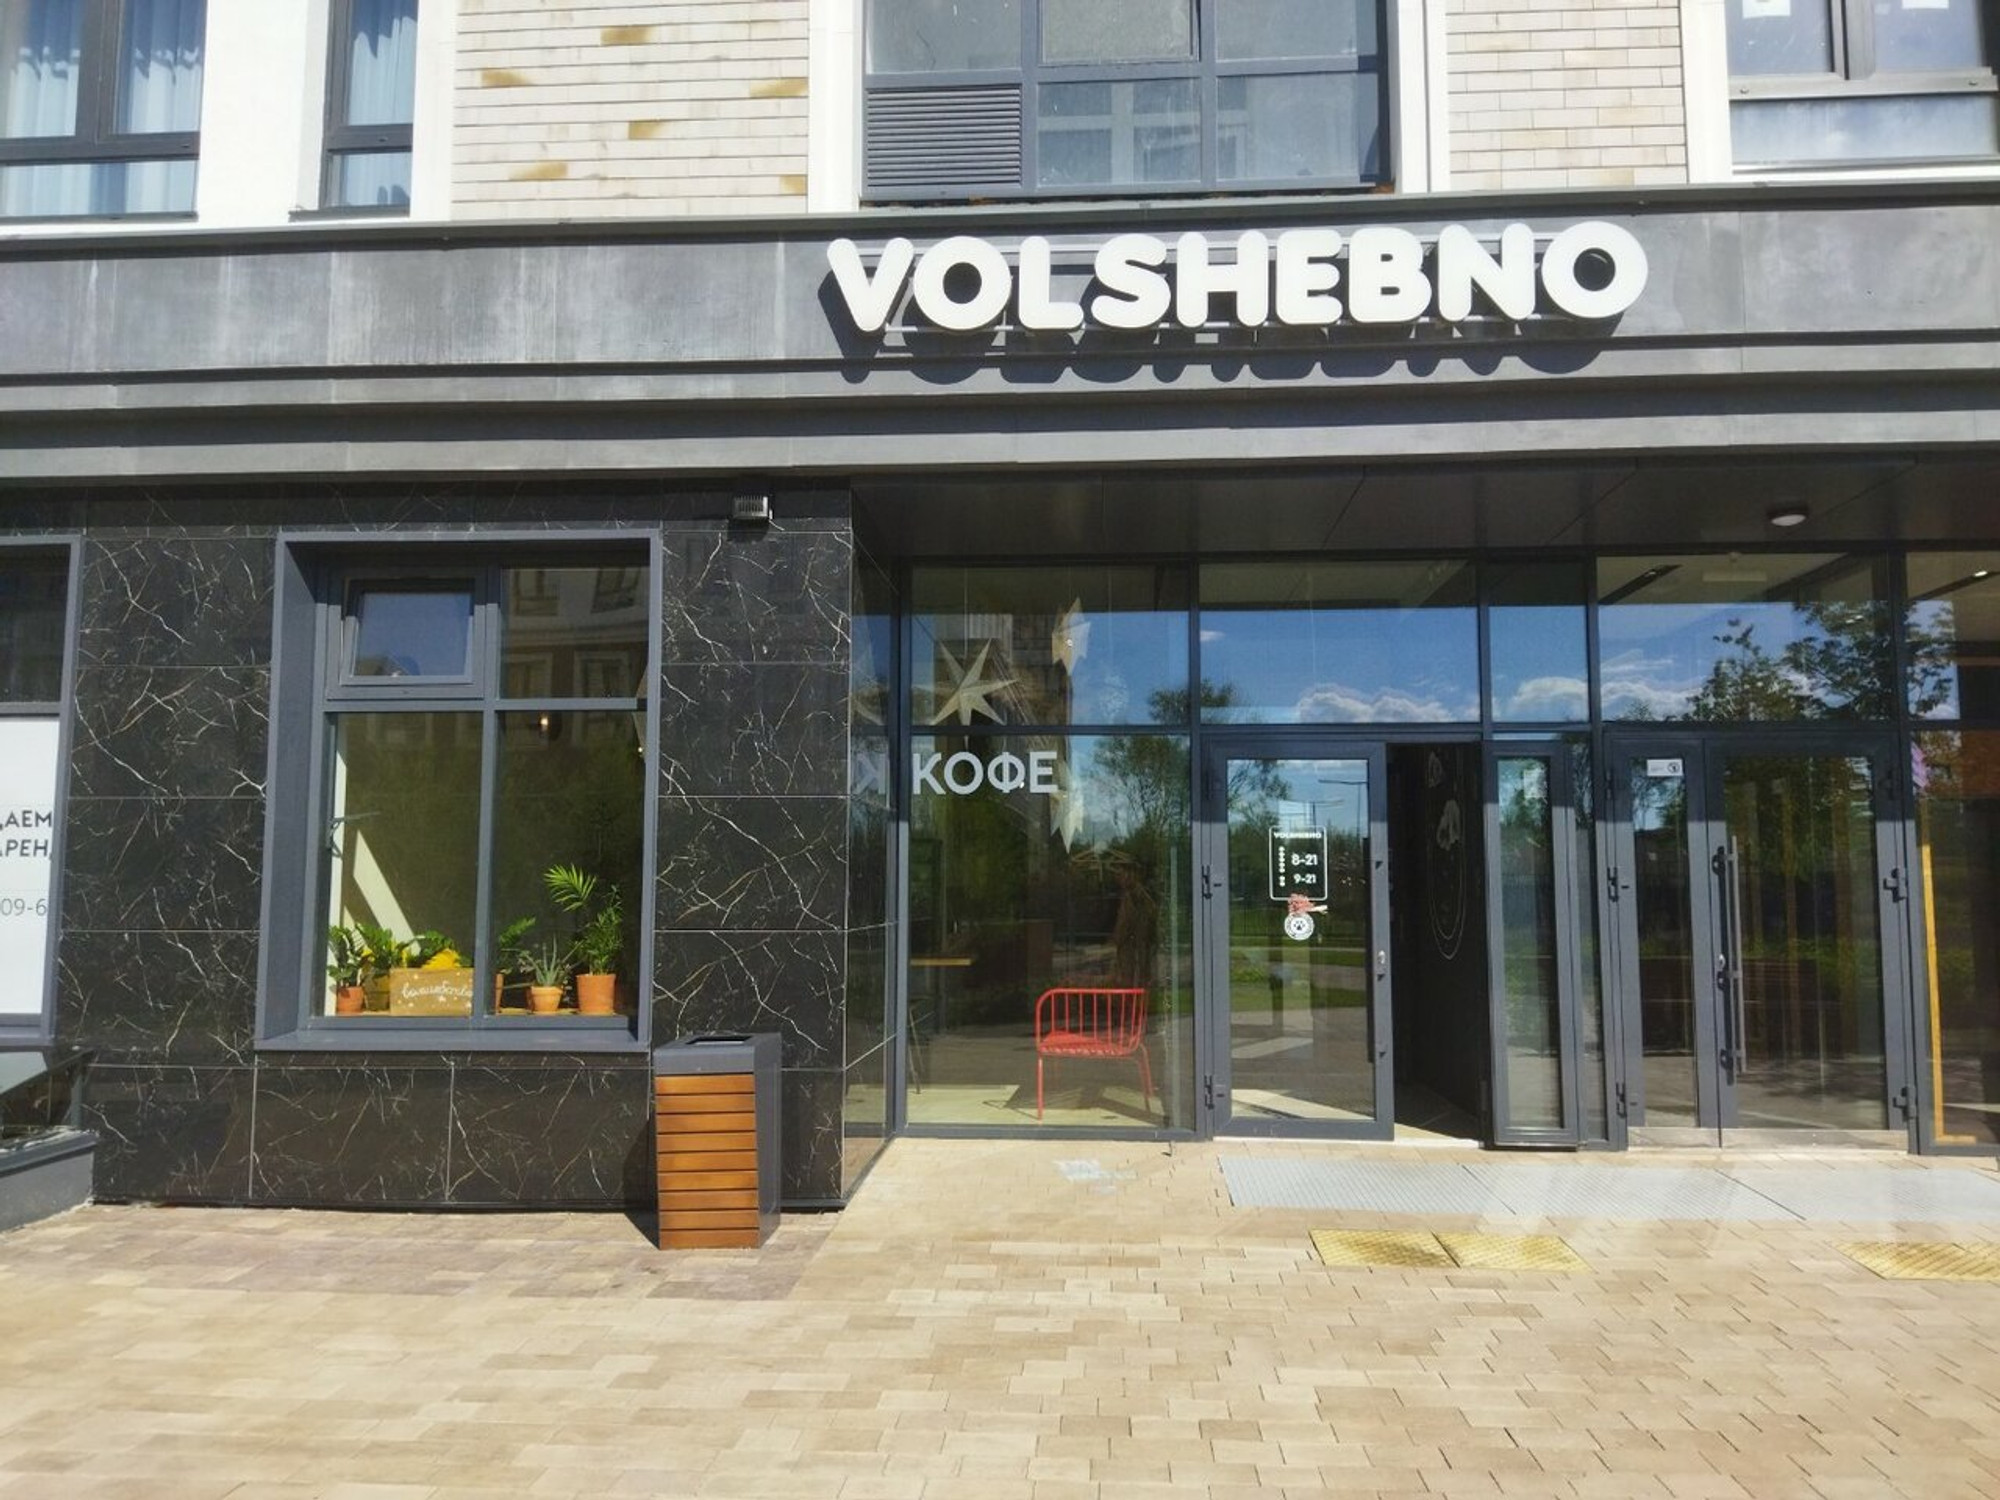 Volshebno (Кофейня)